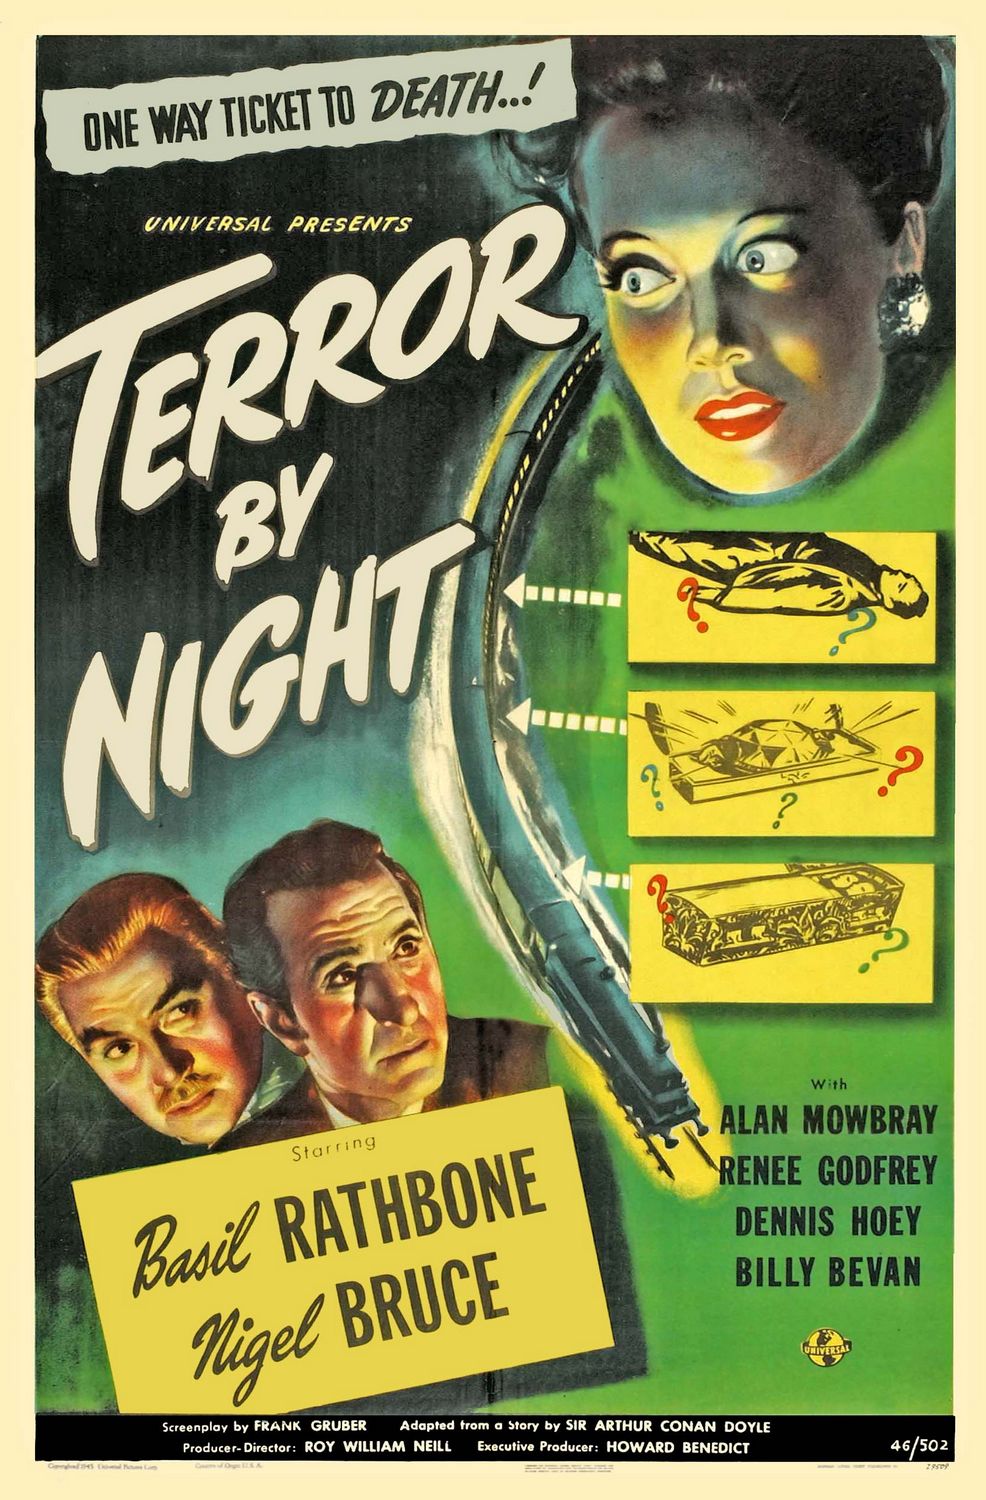 Постер - Шерлок Холмс: Ночной террор: 986x1500 / 294 Кб